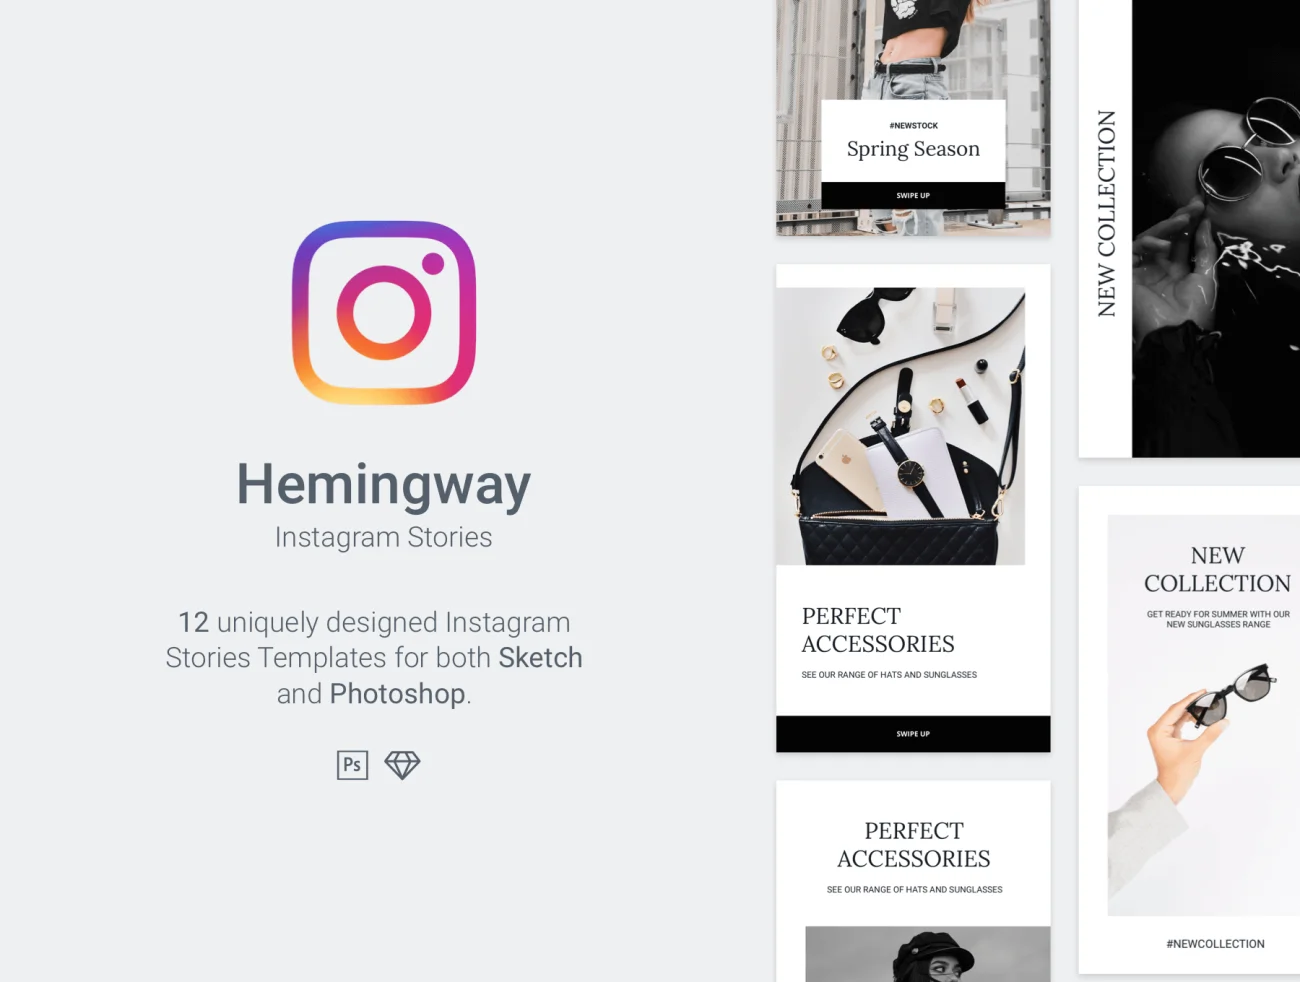 Hemingway Instagram Stories Template 海明威Instagram故事模板-UI/UX-到位啦UI